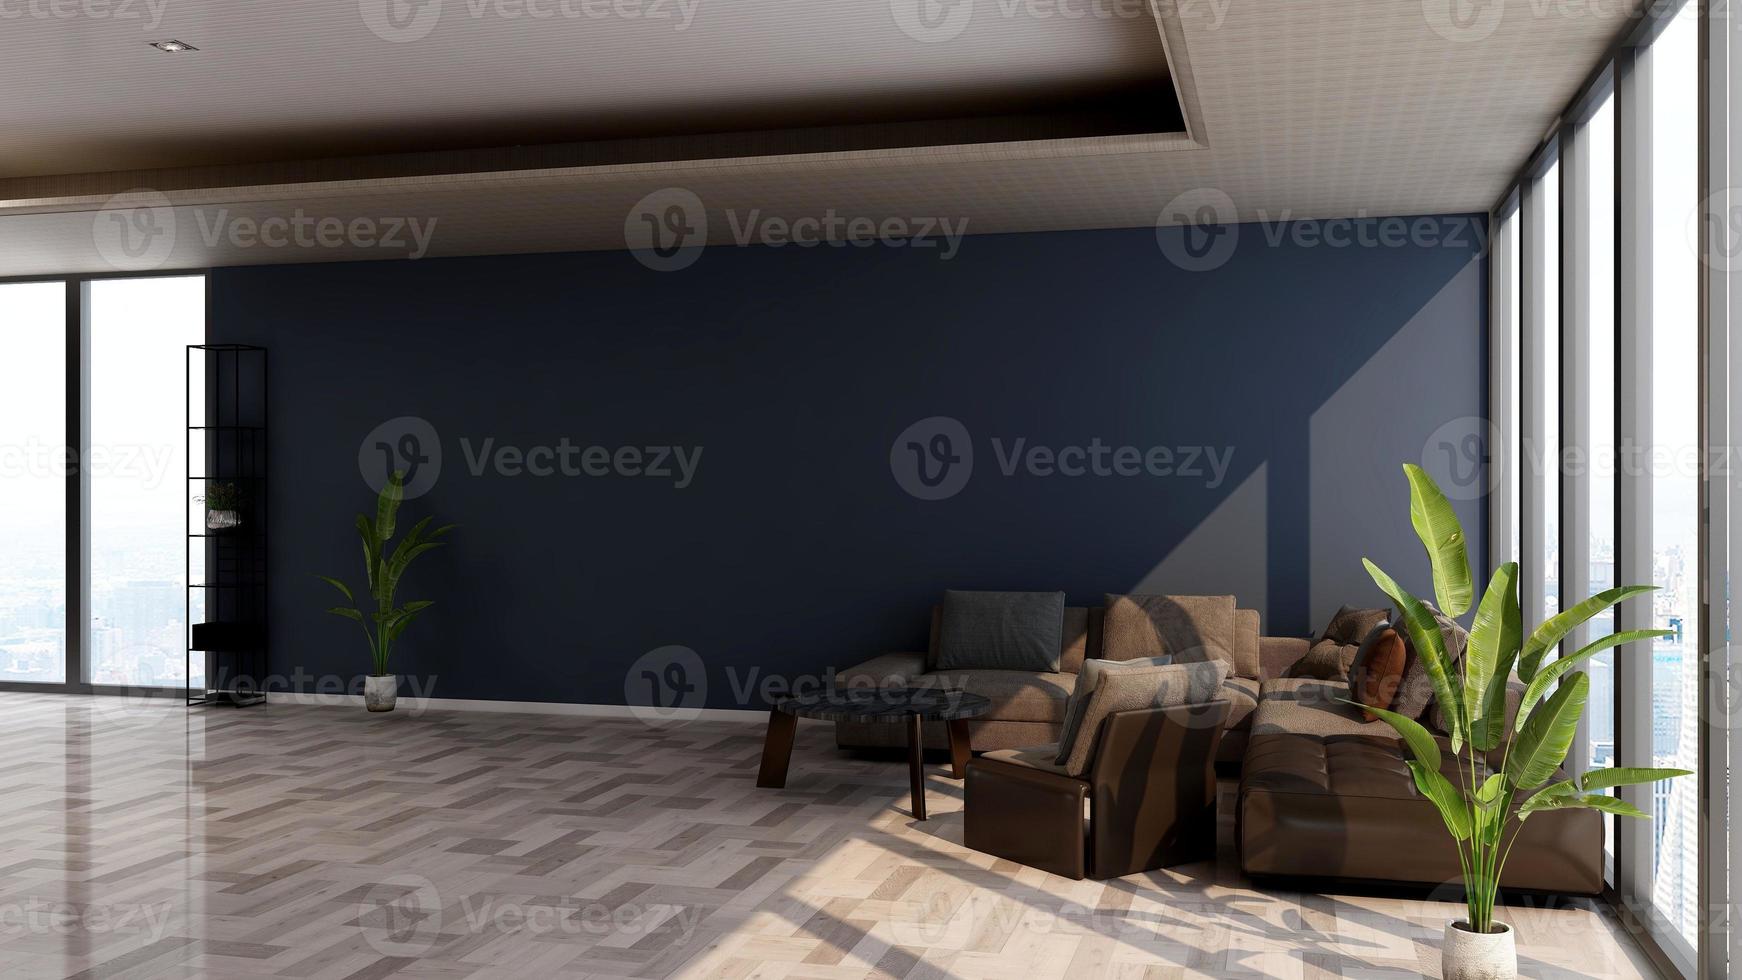 3d renderização de design de maquete de parede de salão de hóspedes com conceito moderno de design de interiores minimalista foto